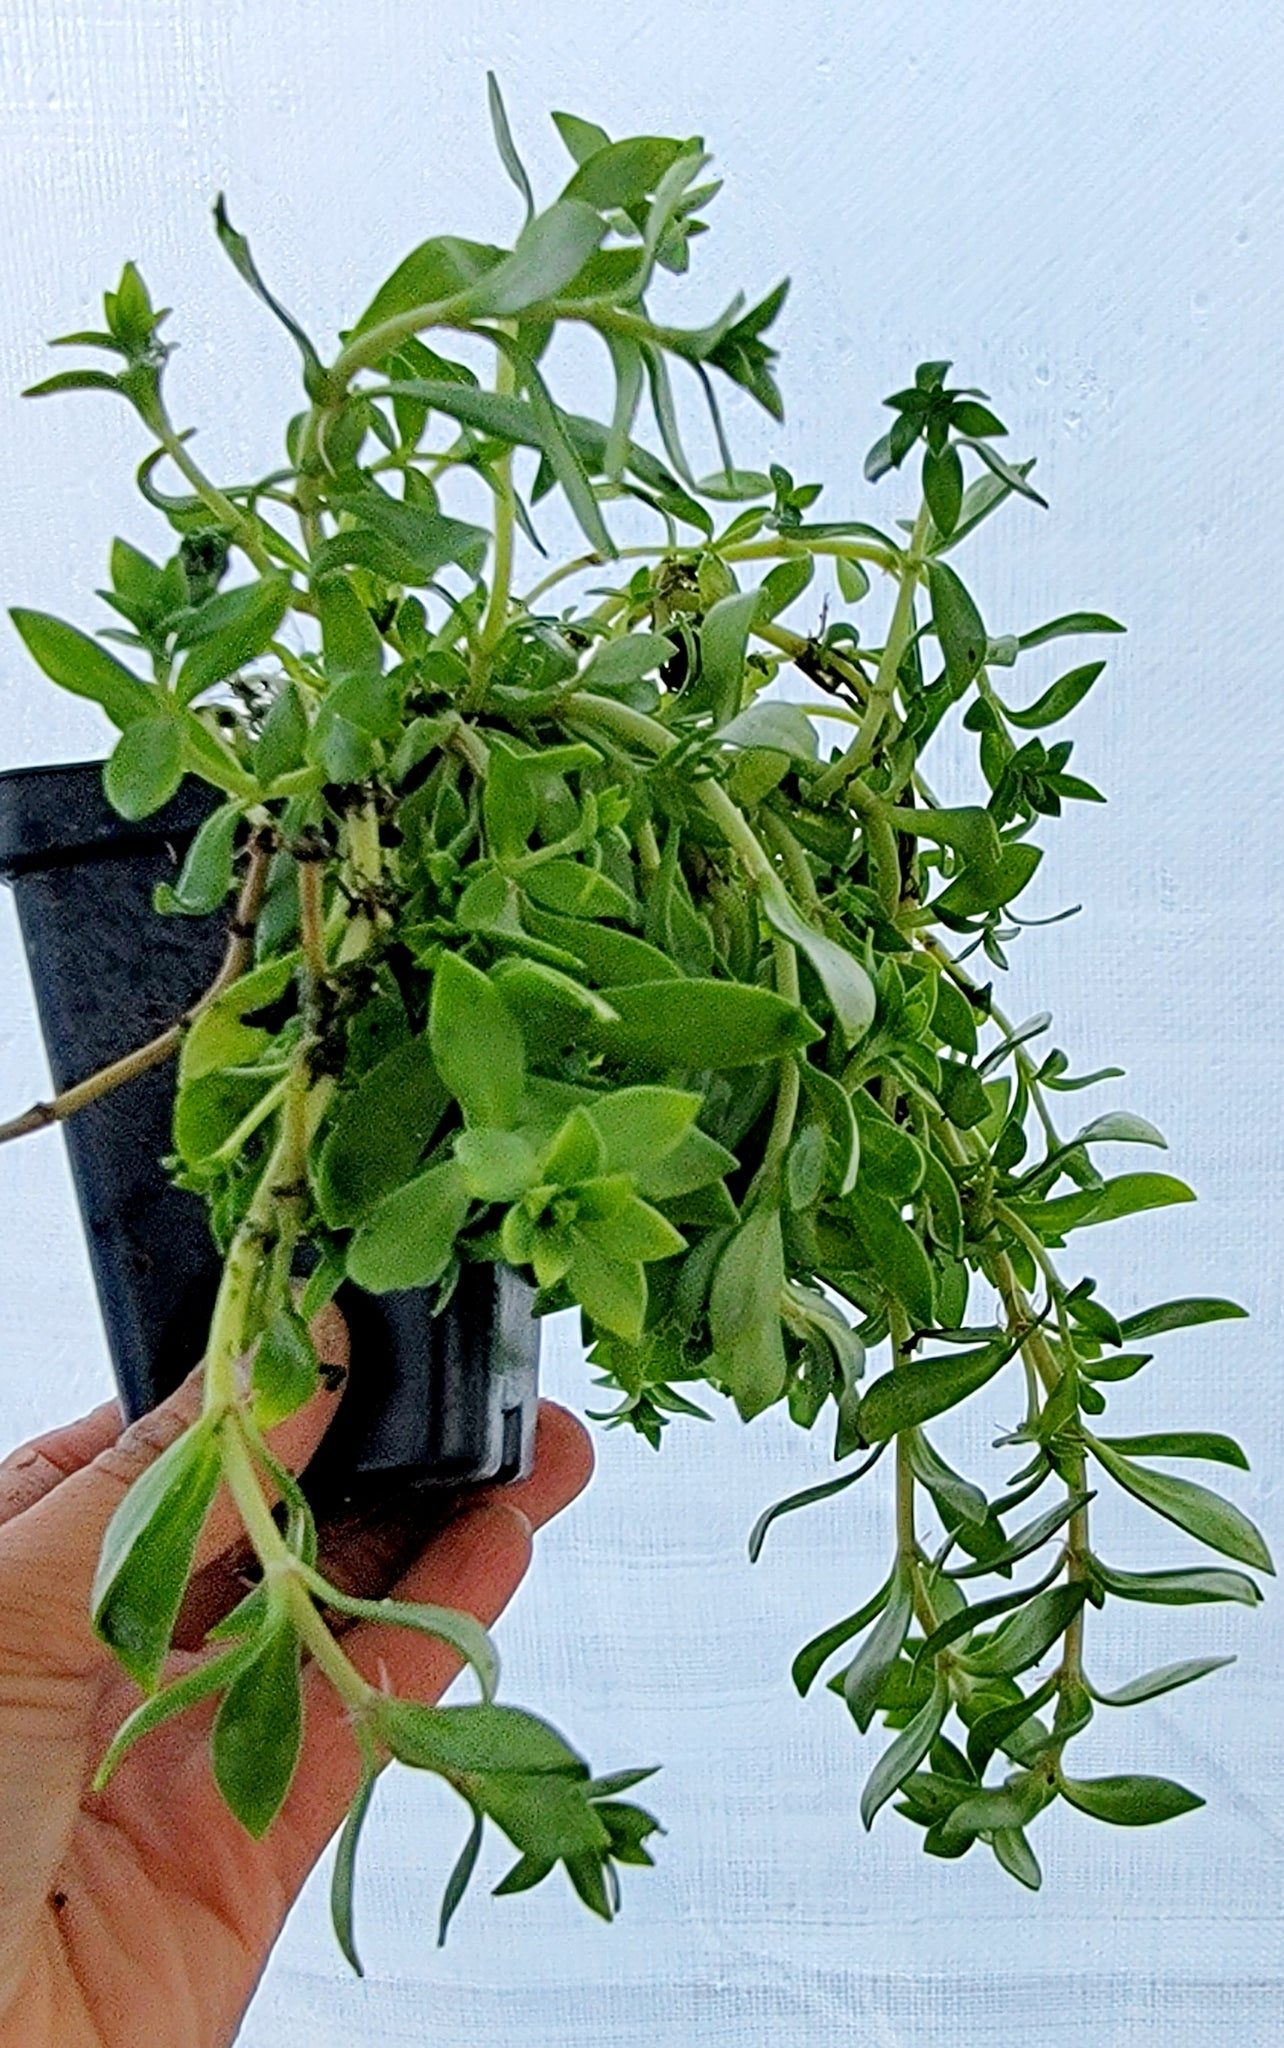 Stringy Stonecrop Edible - Kuab Nplais Dib Hmong Medicinal Herbs Starter Live Plant - 2.5" pot *PREORDER ONLY*